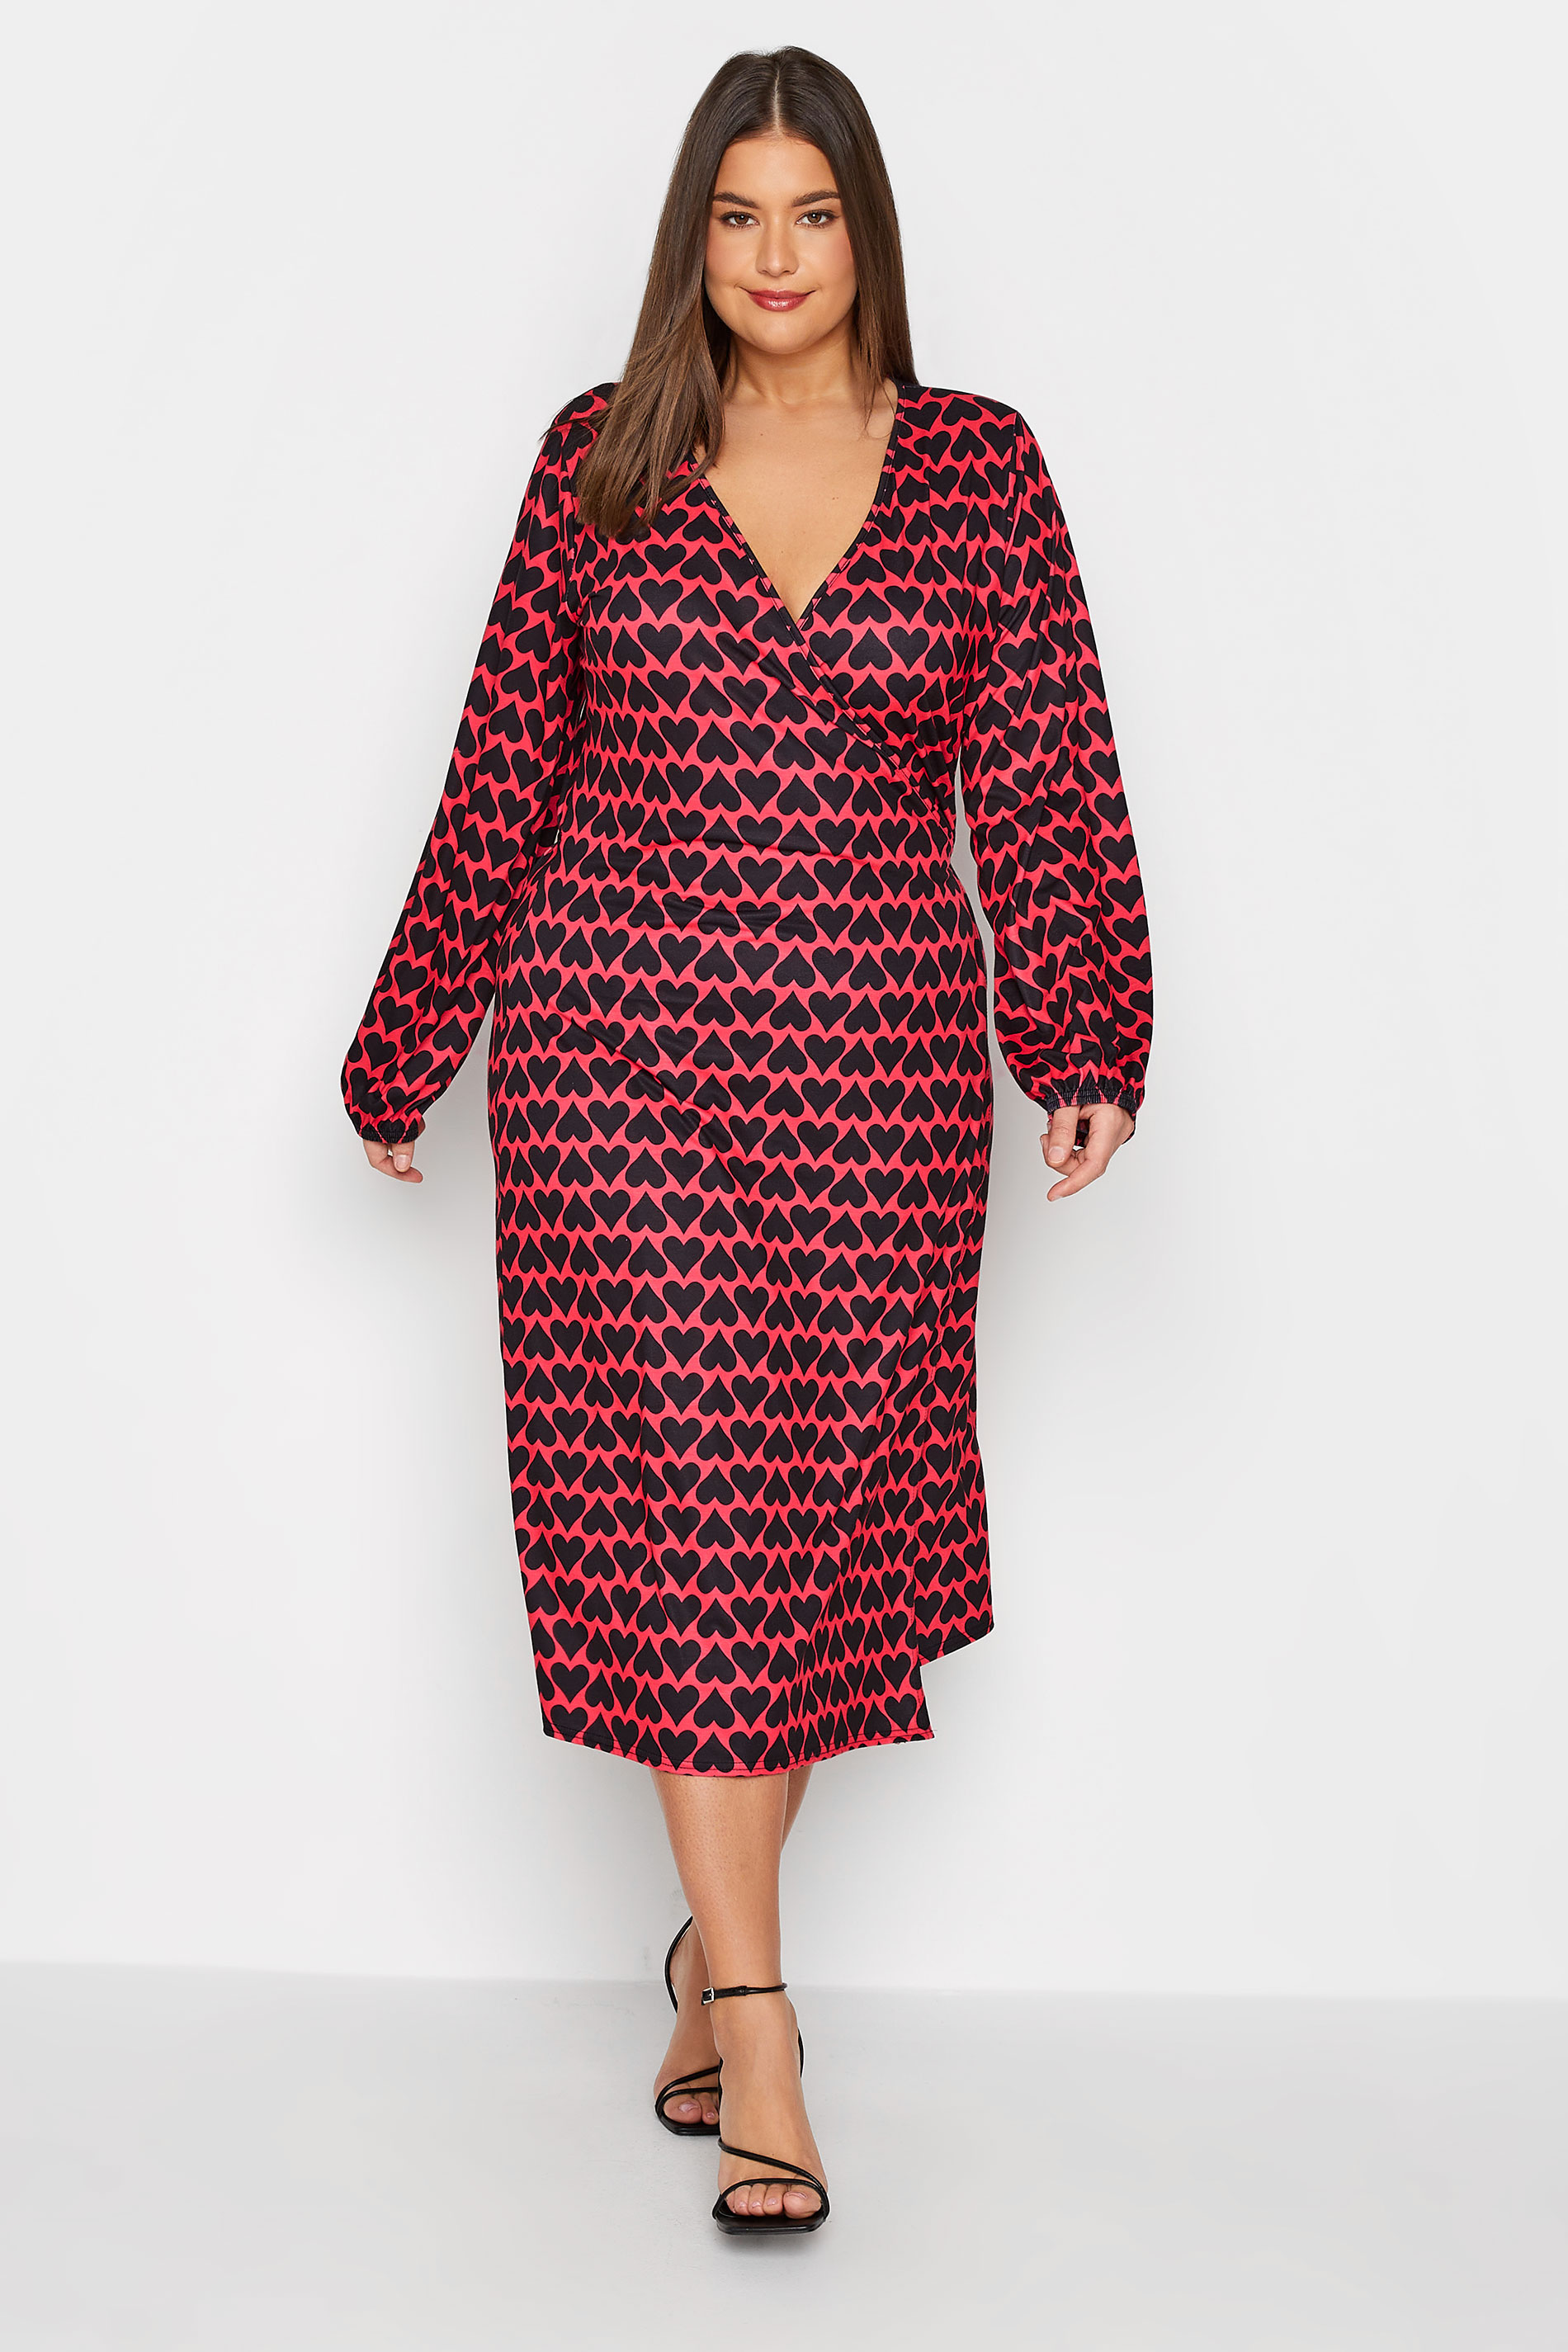 LTS Tall Red & Black Heart Print Midi Wrap Dress | Long Tall Sally  1